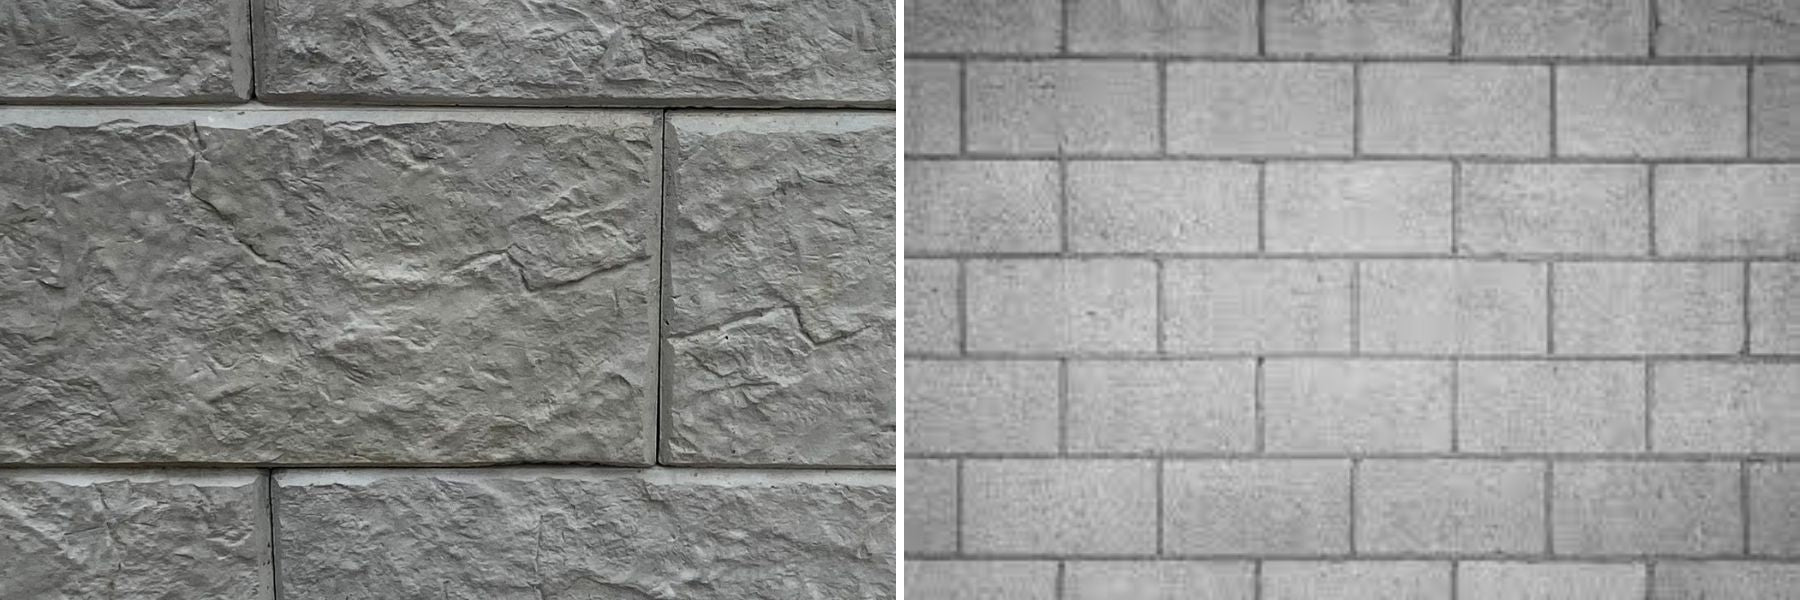 Stonebloc Vs Masonry Retaining Walls